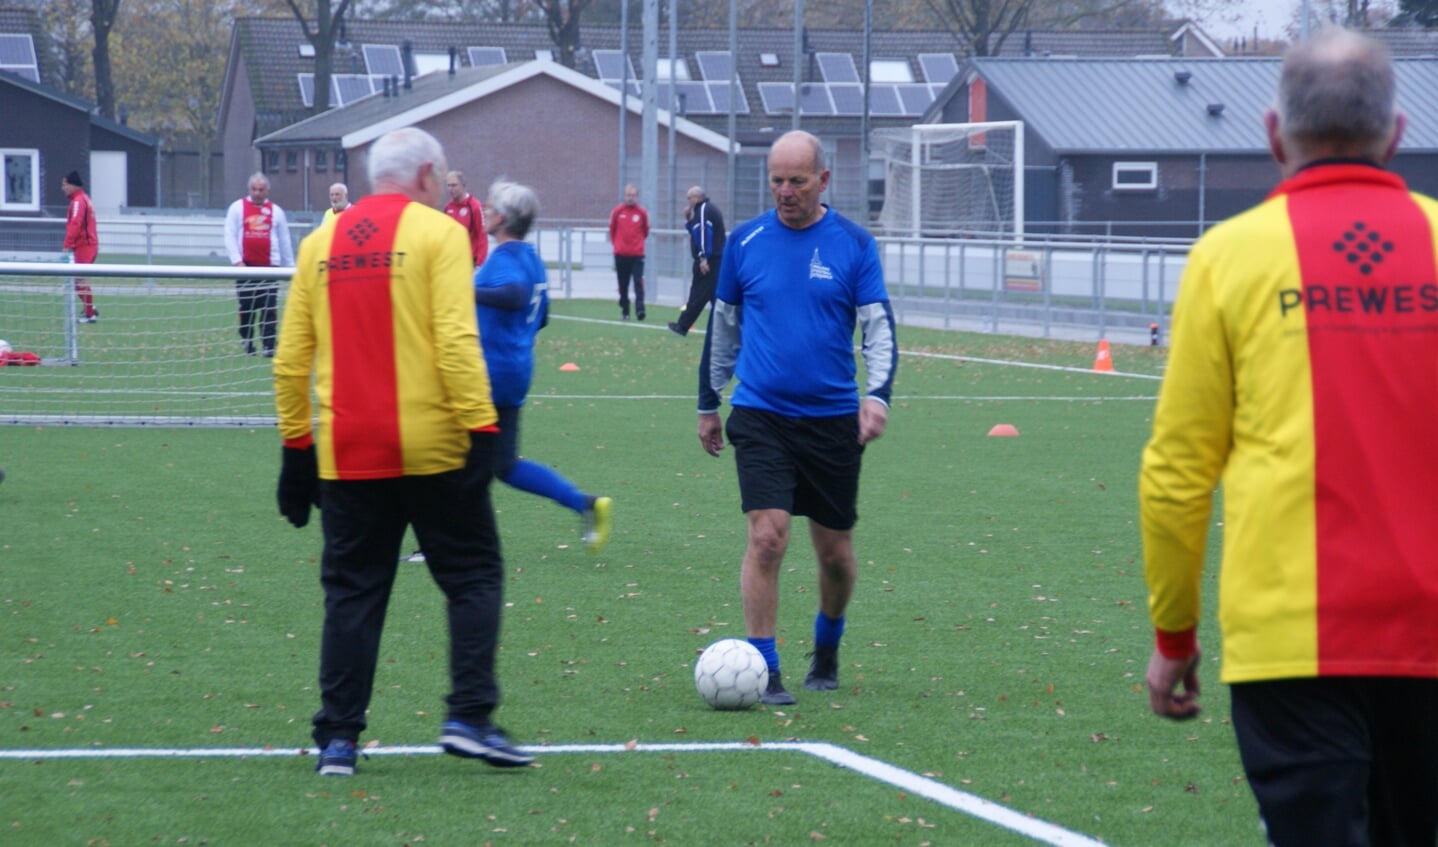 Frans van der Velden namens Walking Football Steenwijk aan de bal